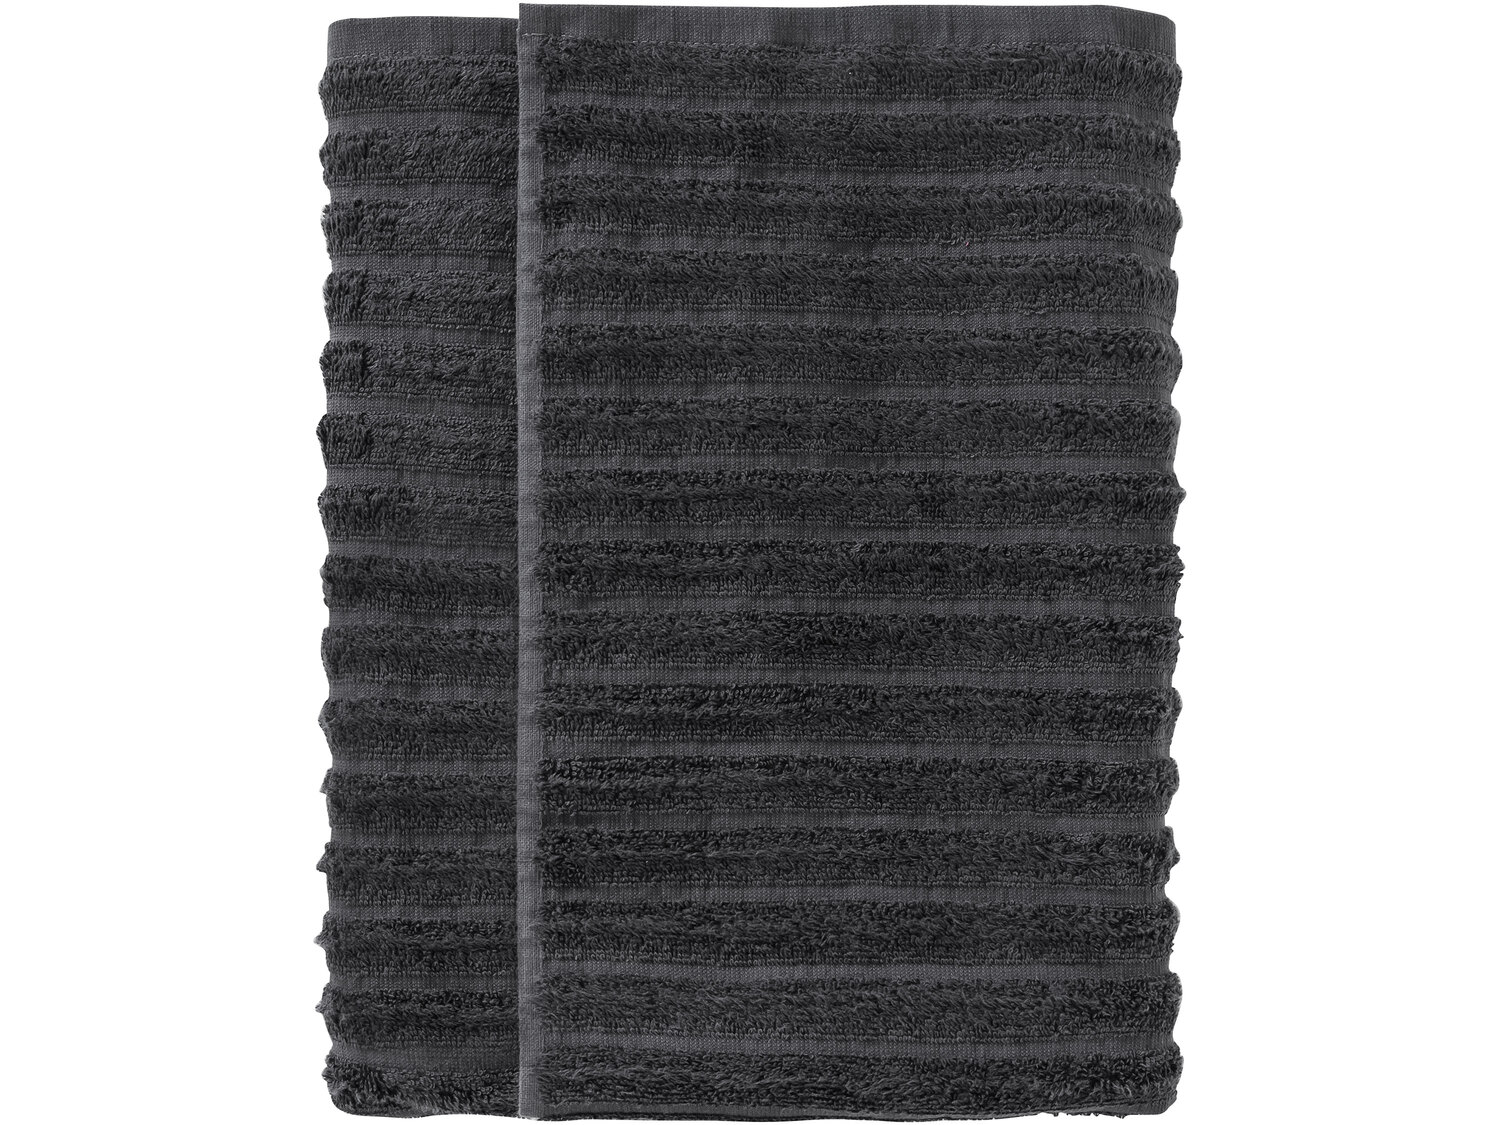 Ręcznik 70 x 140 cm Miomare, cena 19,99 PLN 
- 450 g/m2
- 100% bawełny
- miękkie ...